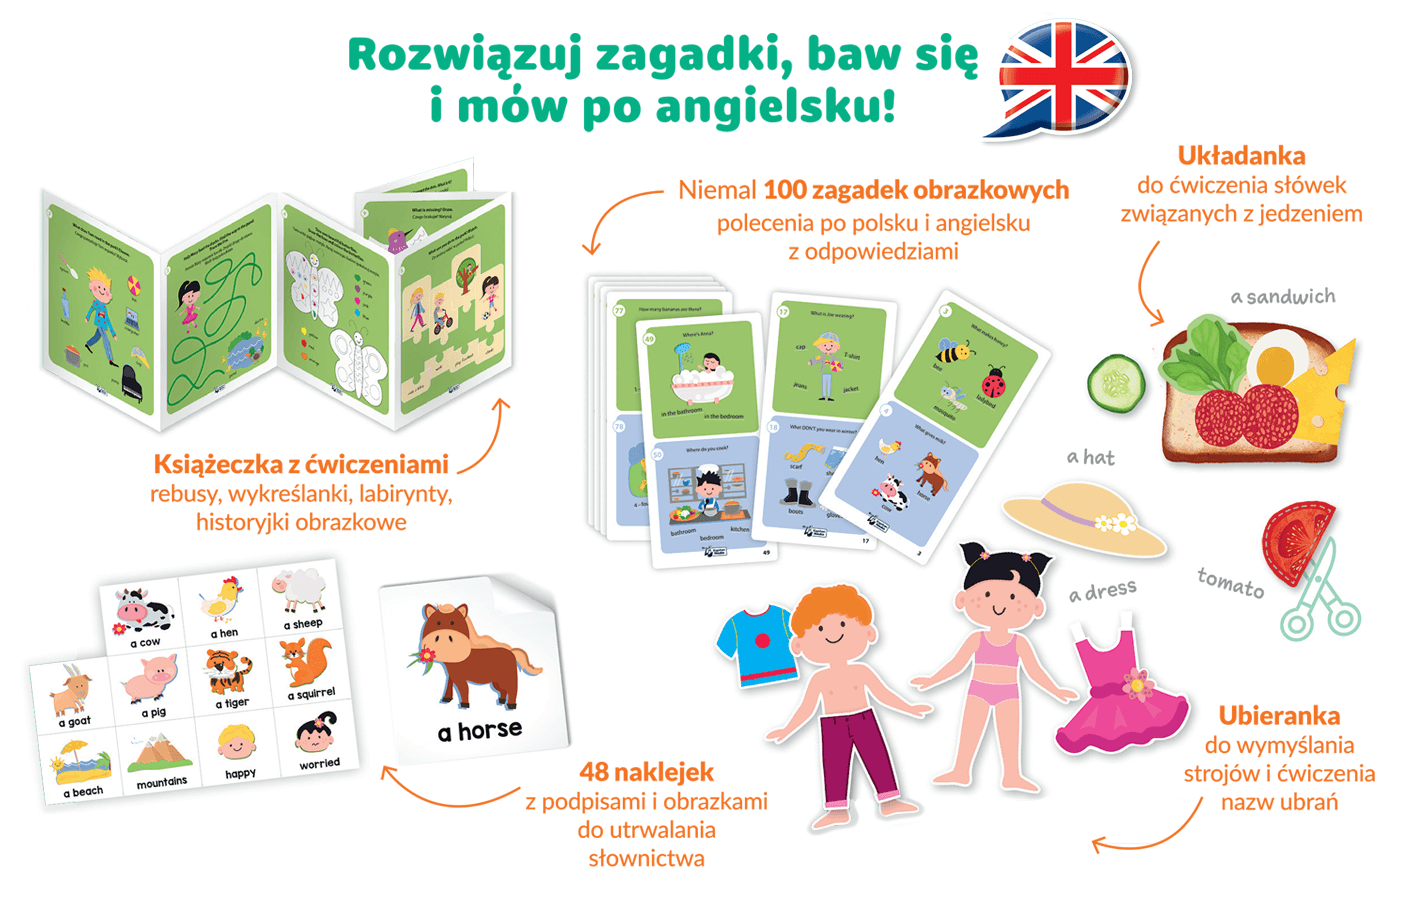 Baw się i ucz! Angielski dla przedszkolaka - Zagadki obrazkowe